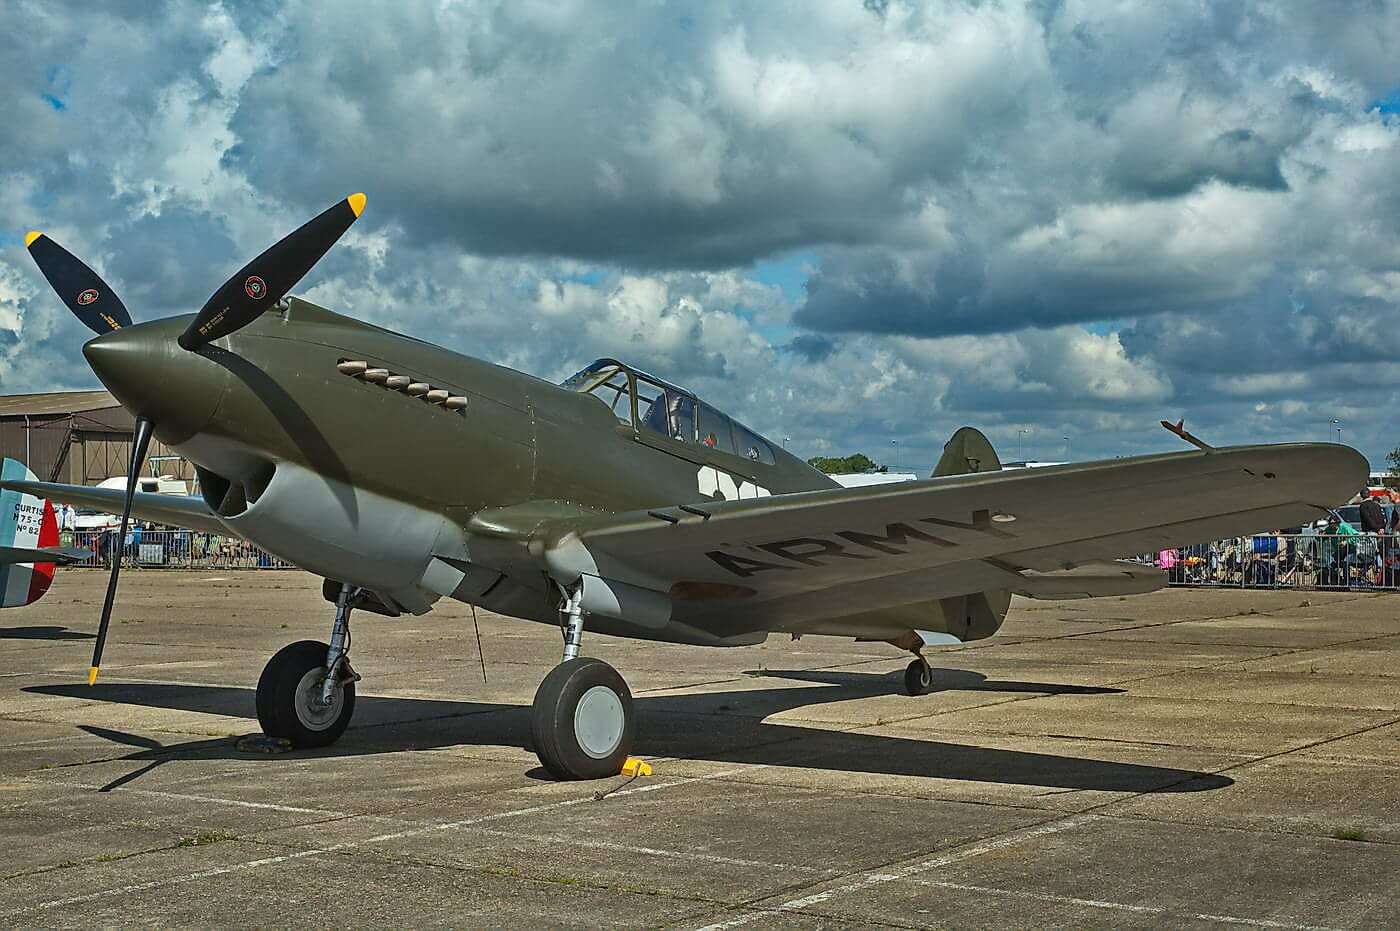 Curtiss P-40B - Warhawk 41-13297